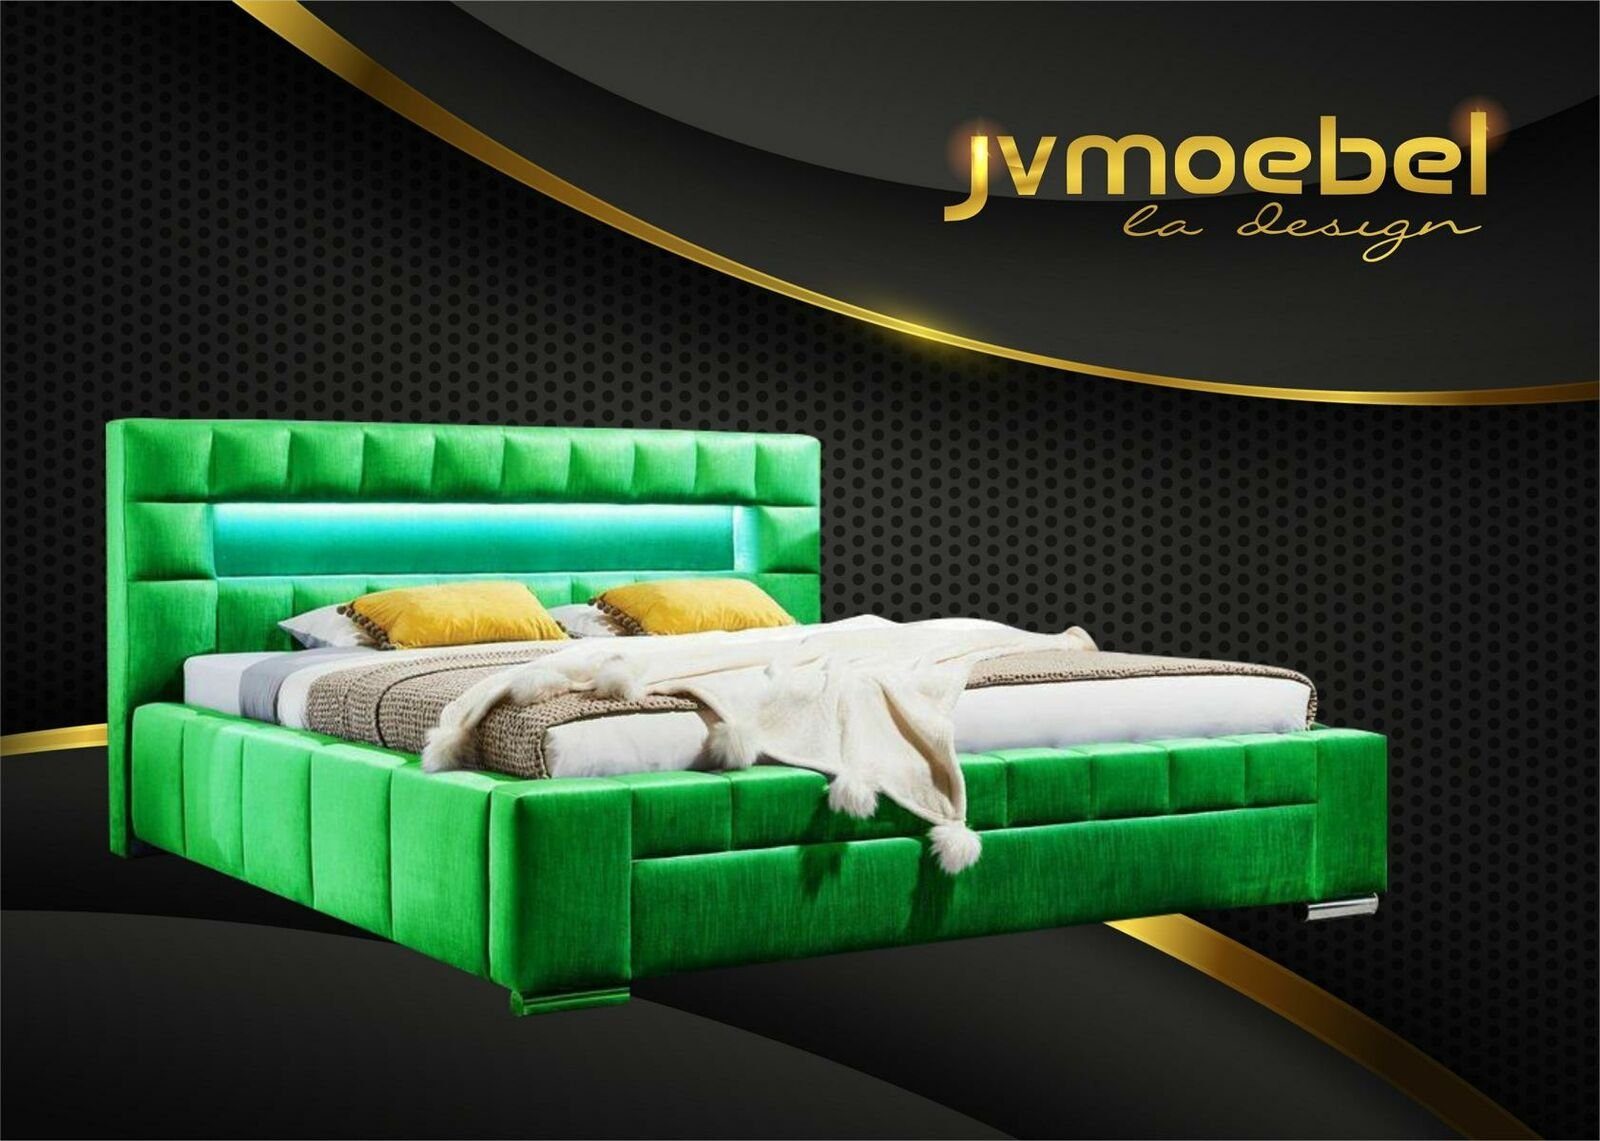 JVmoebel Bett, Bett inkl LED Beleuchtung Schlafzimmer Design Möbel Modern Betten Grün